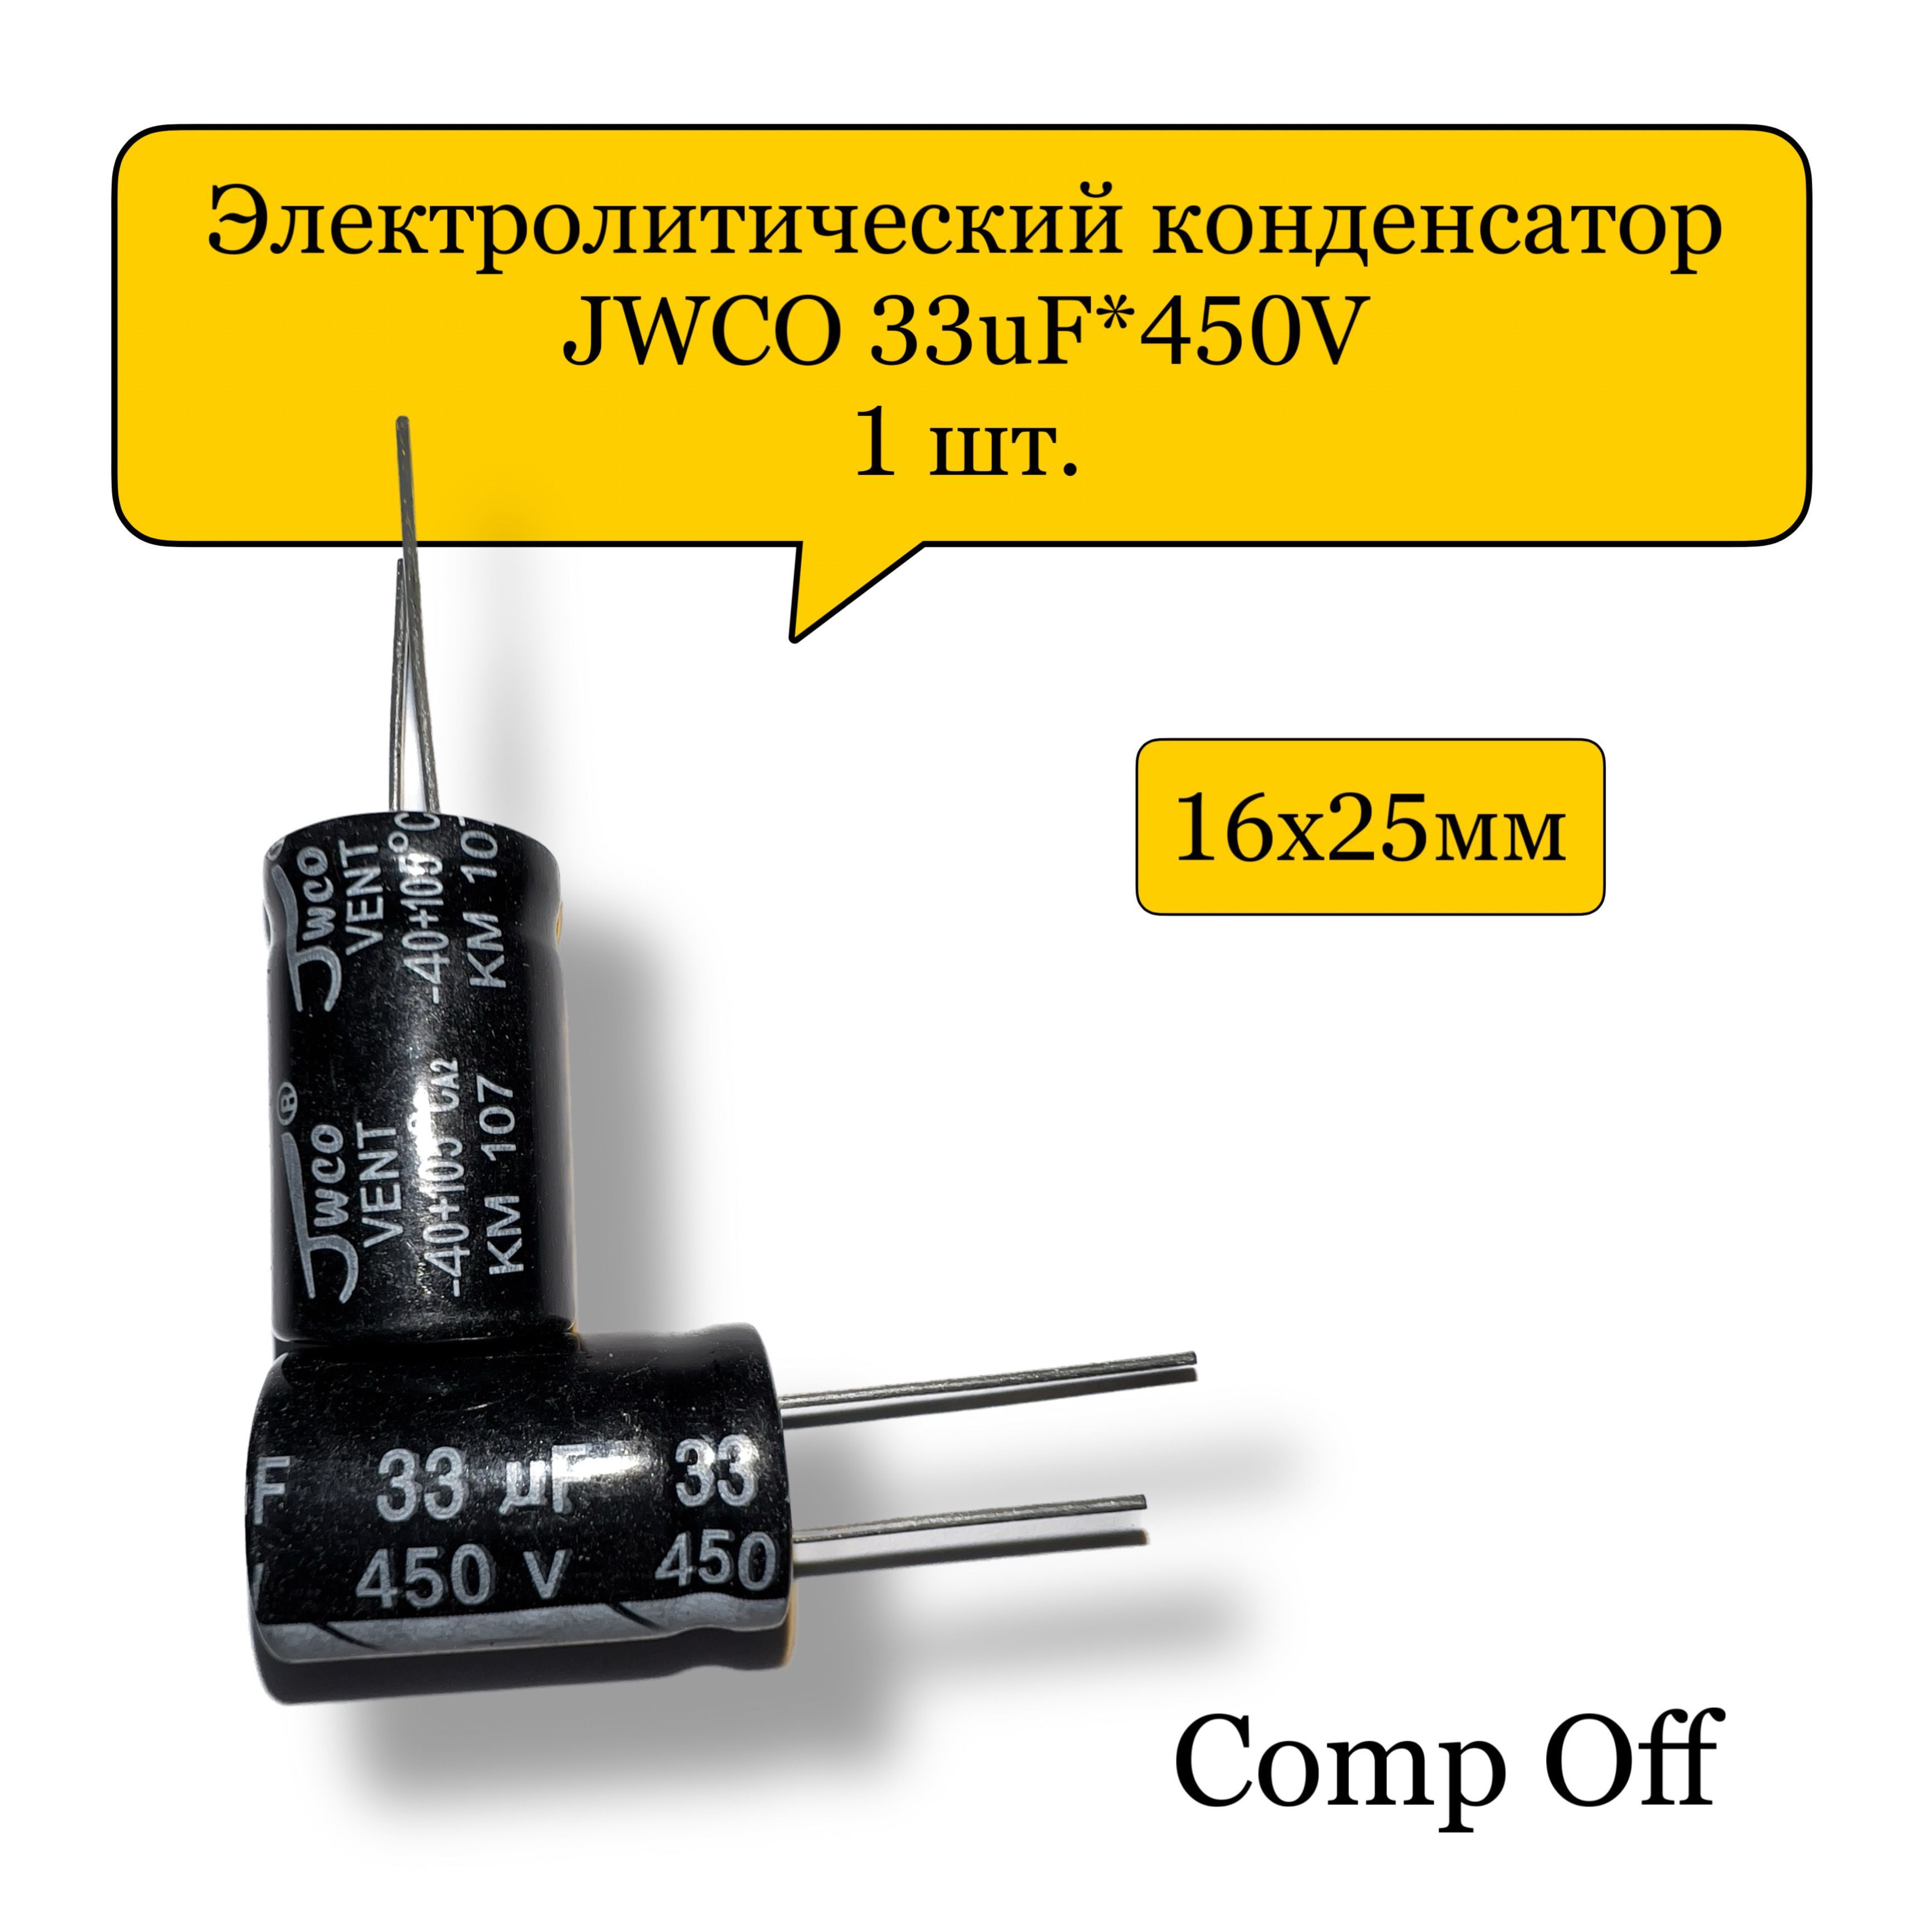 Конденсаторэлектролитический33uF*450V/33мкф450ВJWCO1шт.